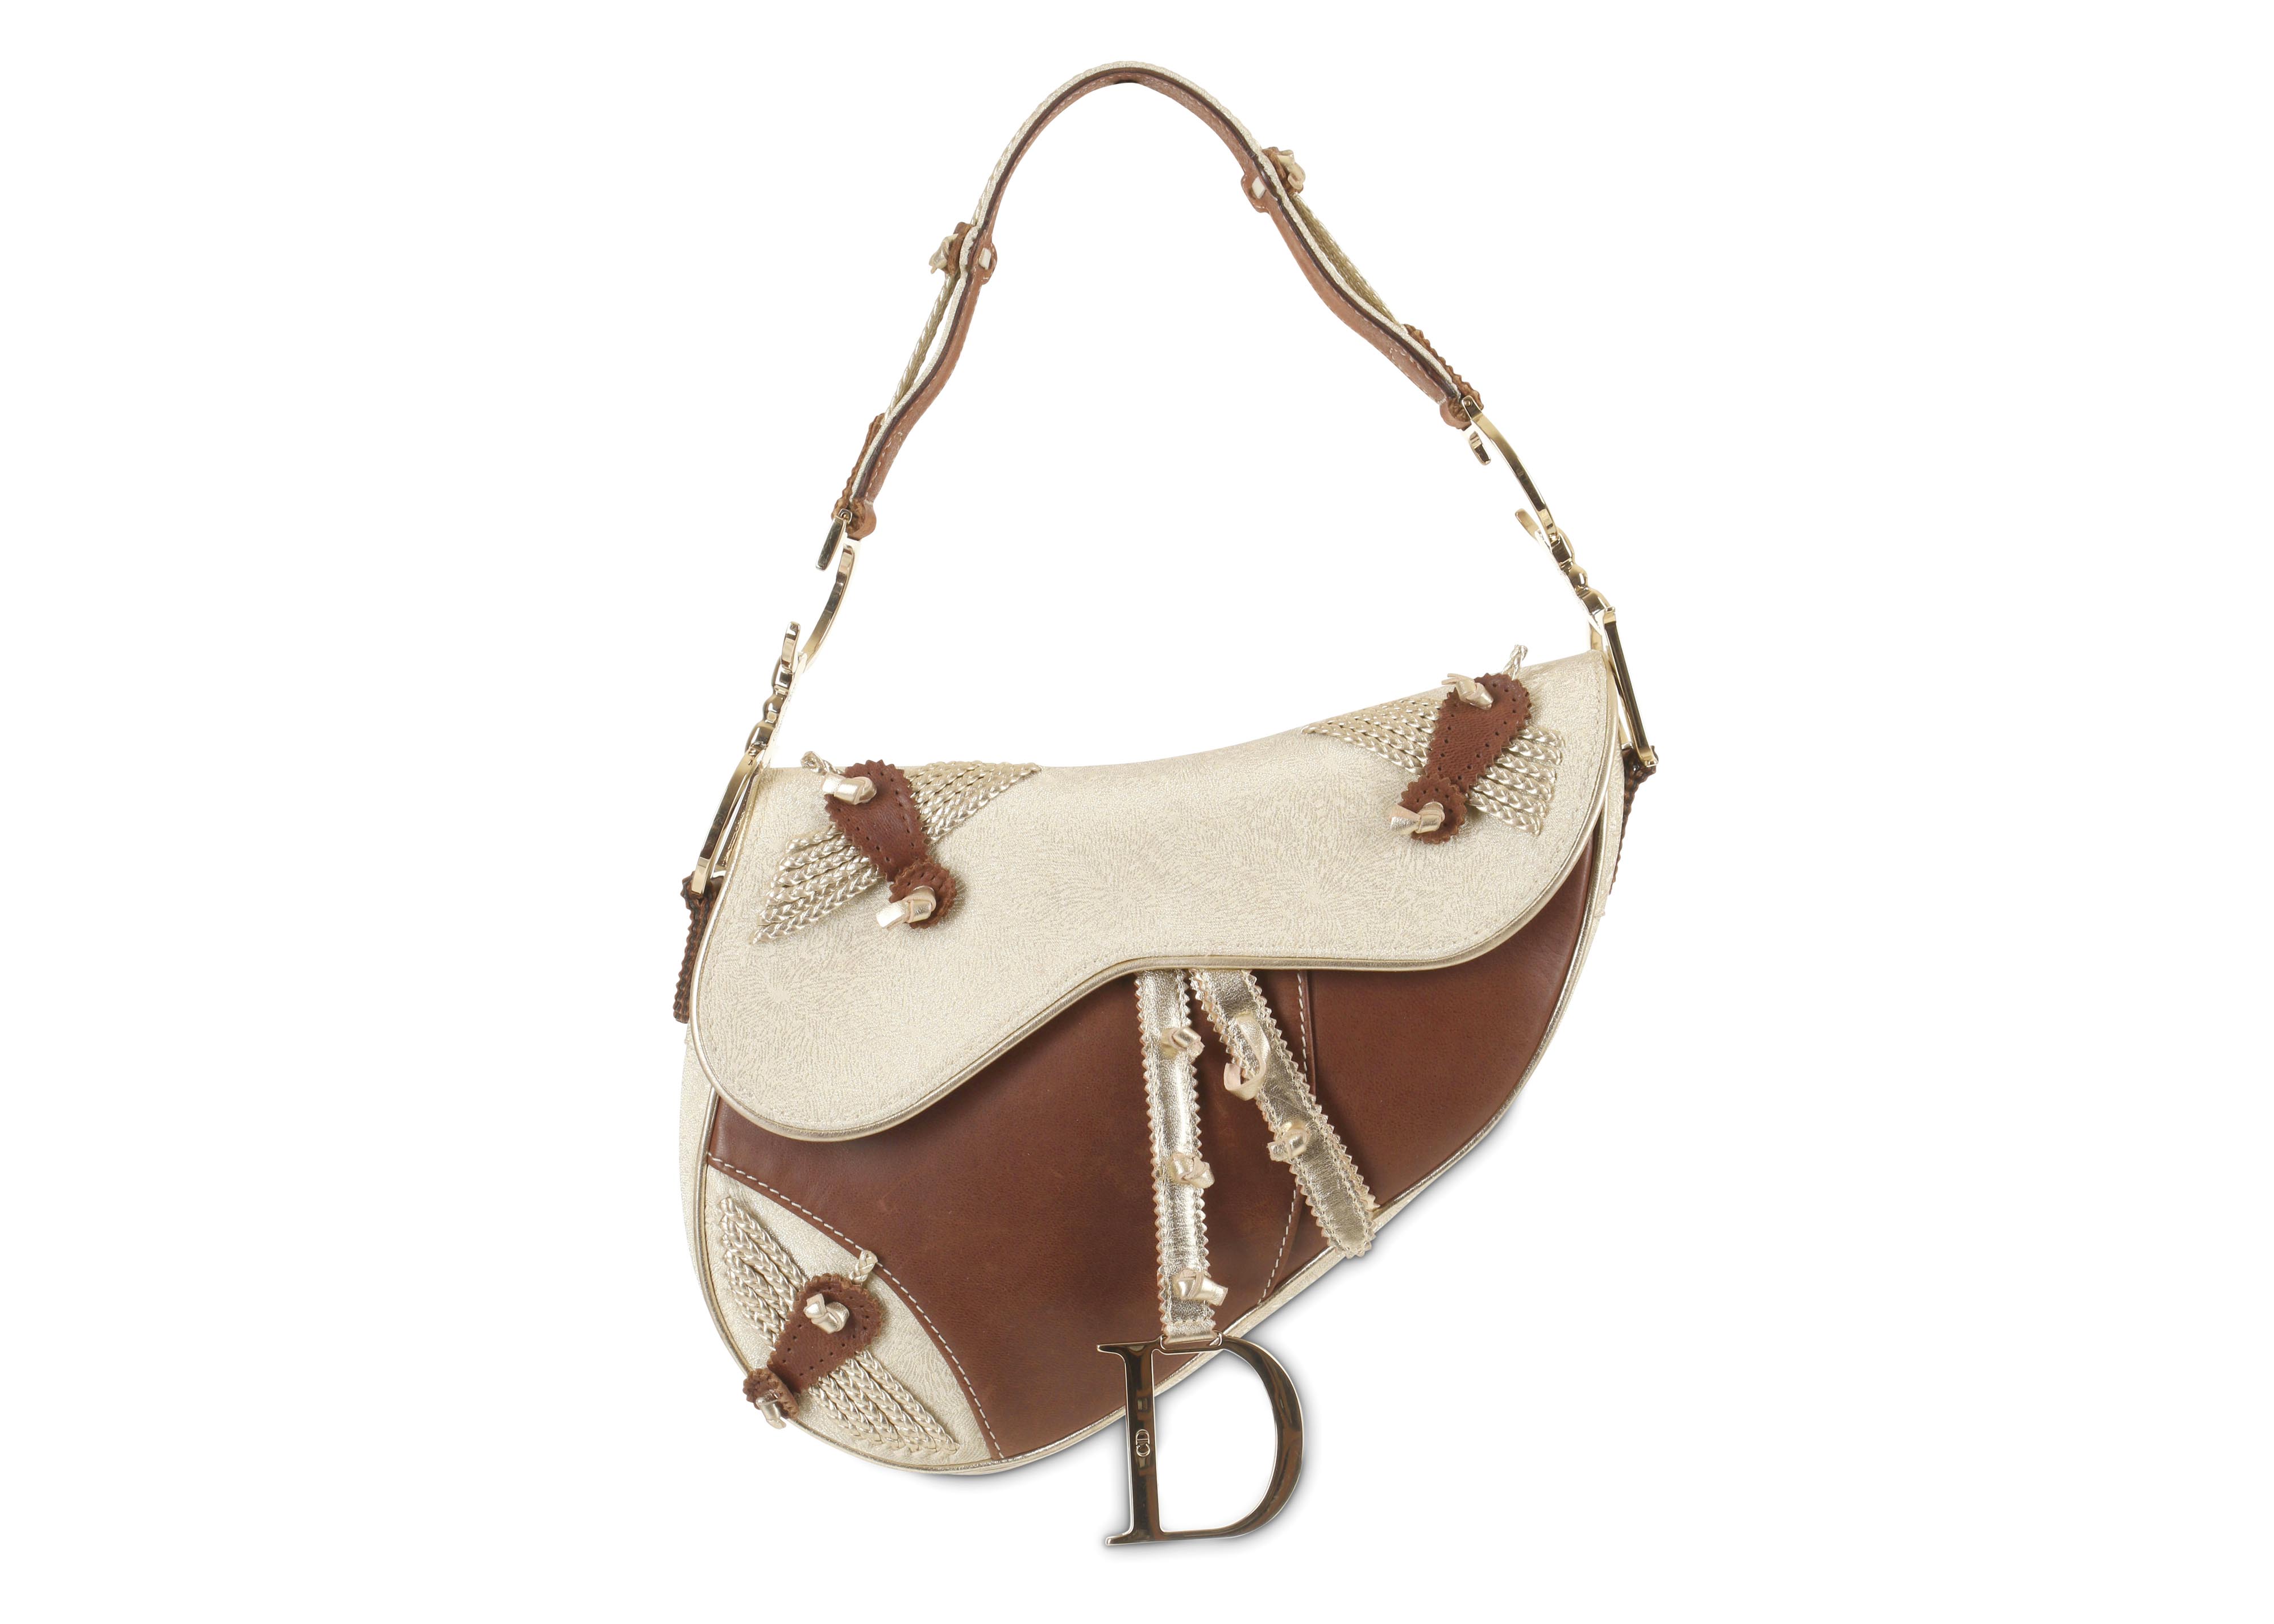 Christian Dior Saddle Bag  Bags Dior saddle bag Saddle handbags